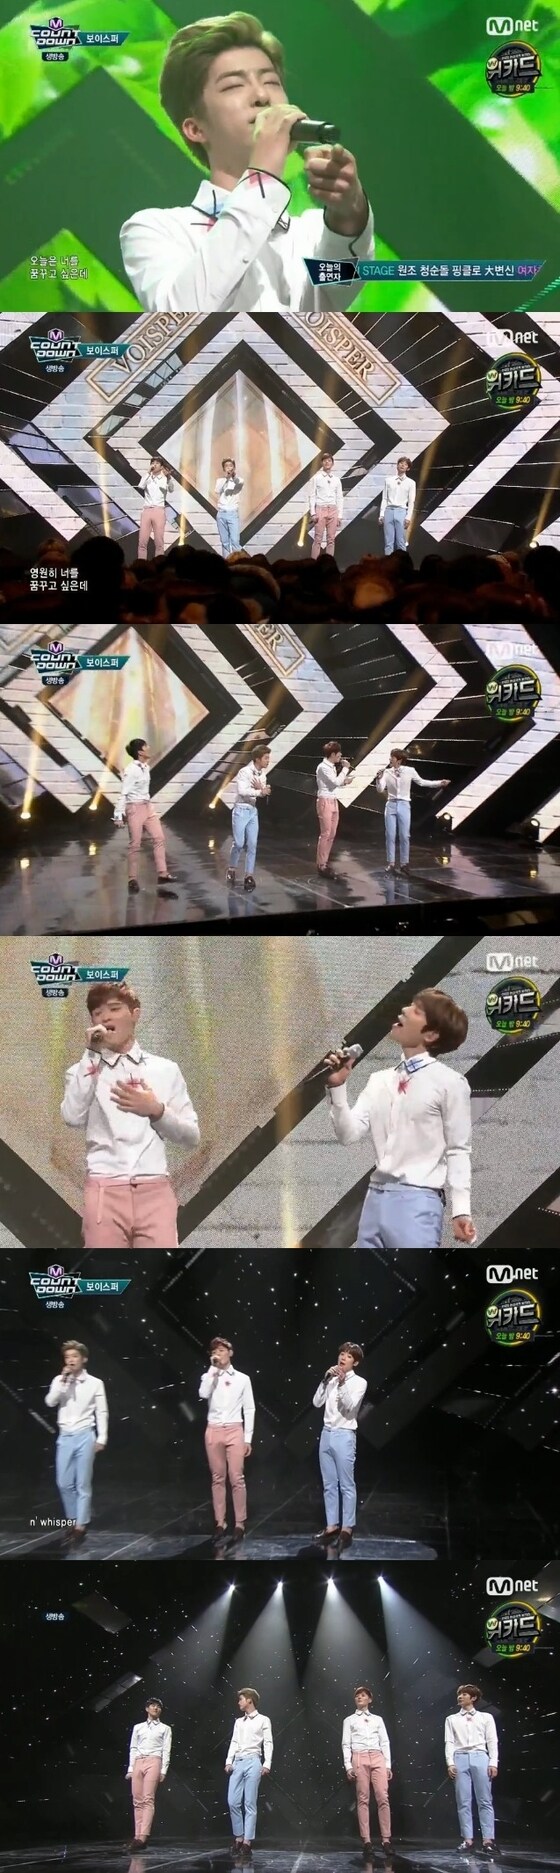 3일 오후 6시 Mnet '엠카운트다운'이 방송됐다. ⓒ News1star / Mnet ´엠카운트다운´ 캡처